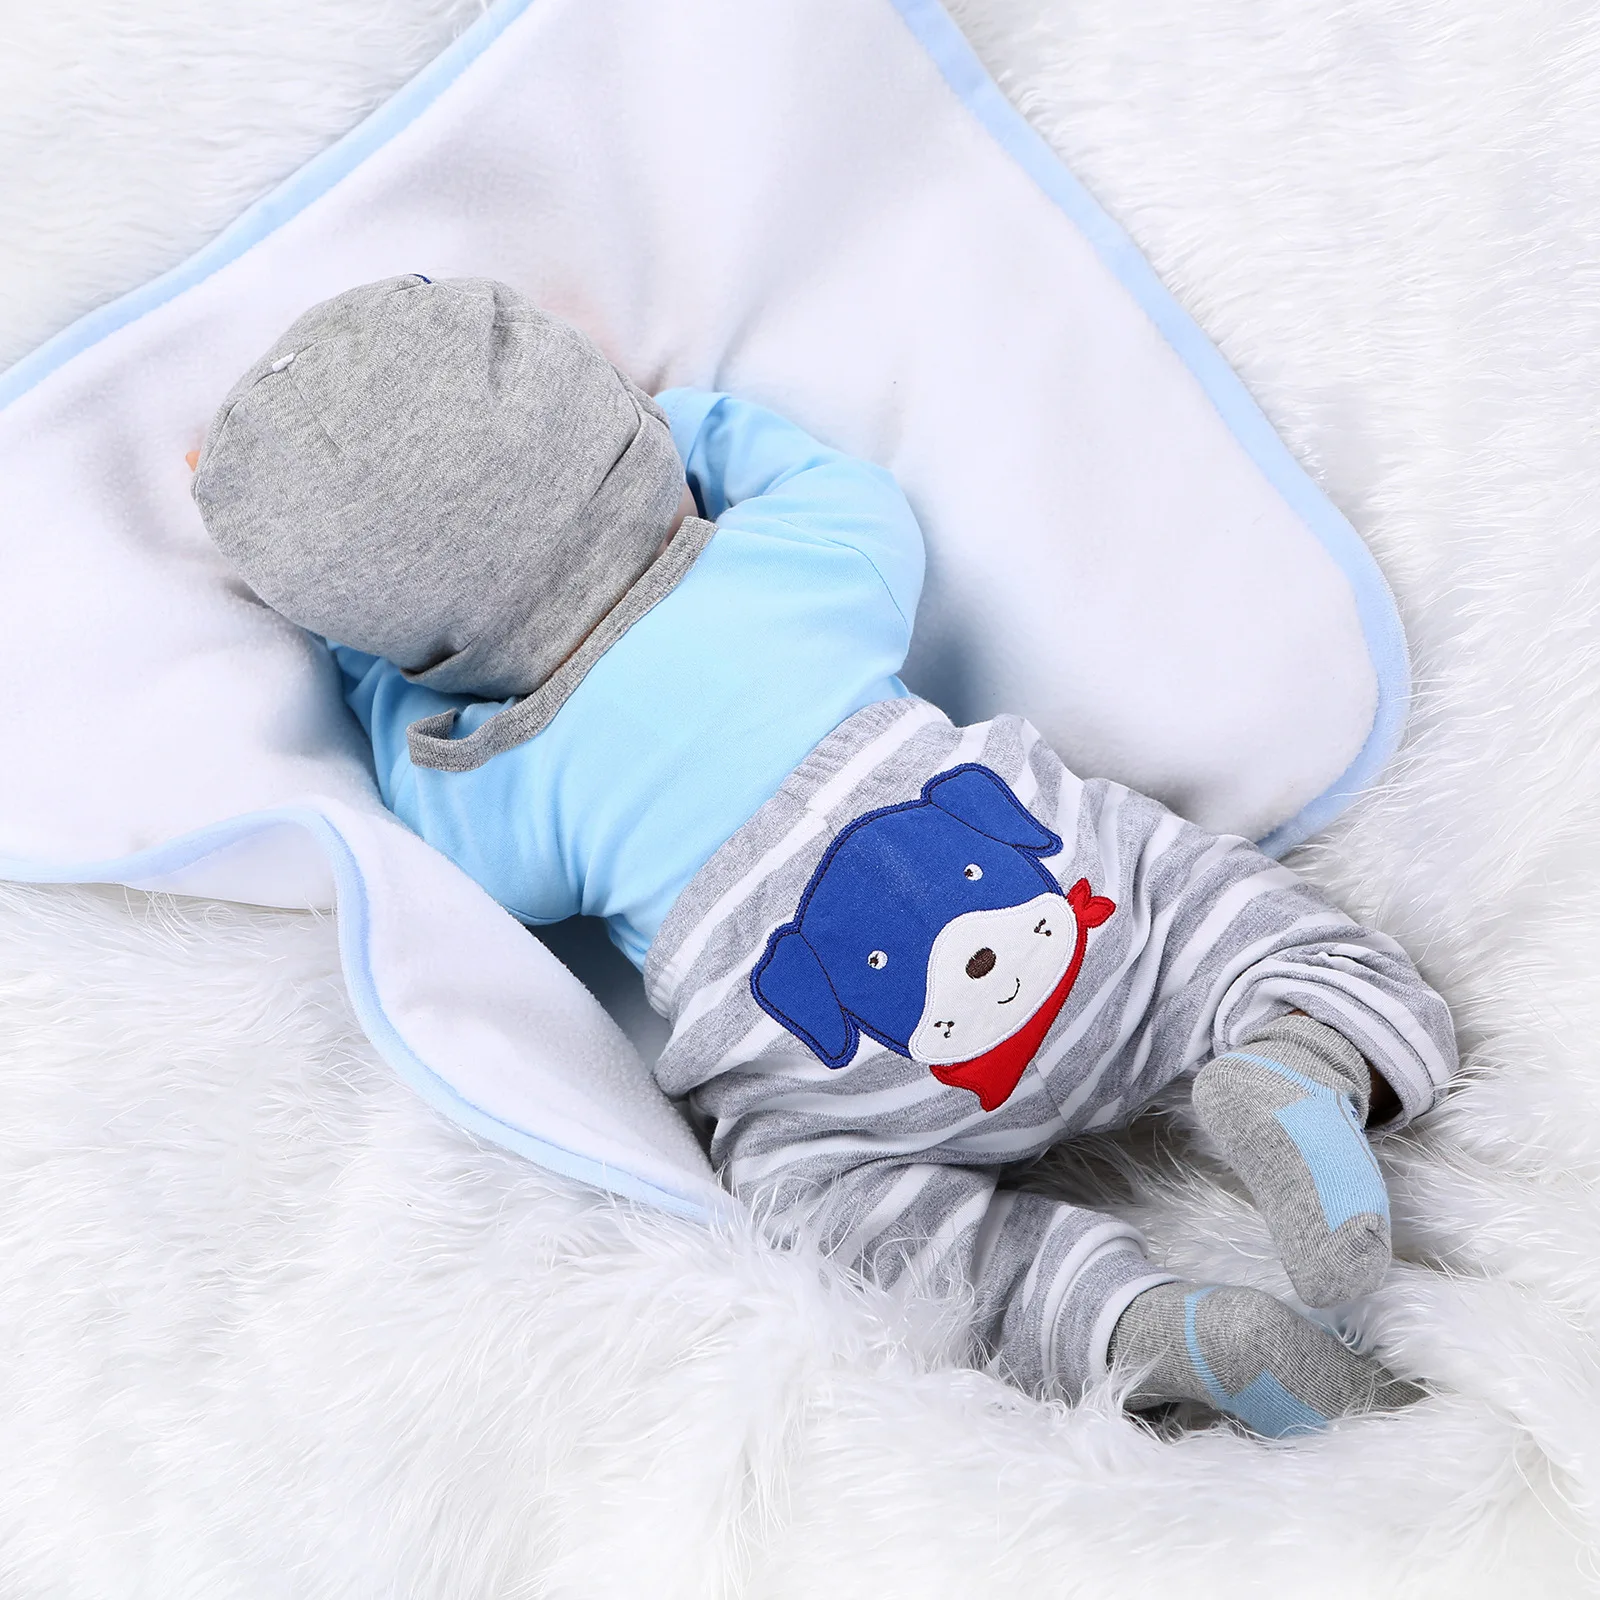 22" Realistisch Junge Puppen Lebensecht Vinyl Silikon Neugeborenes Baby Puppen 